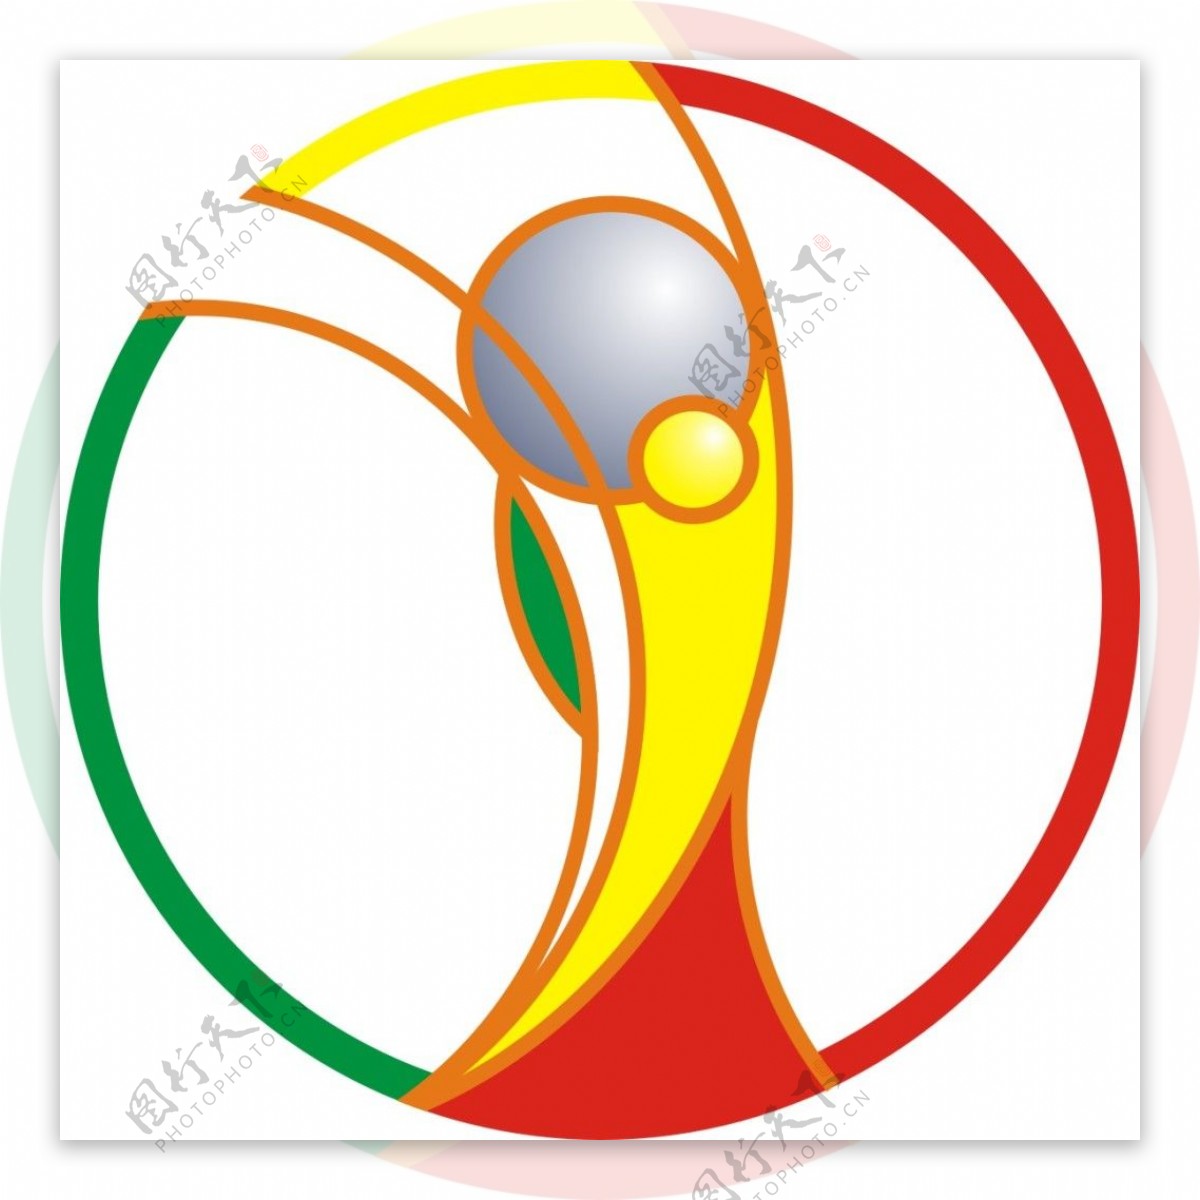 2002足球世界杯会徽